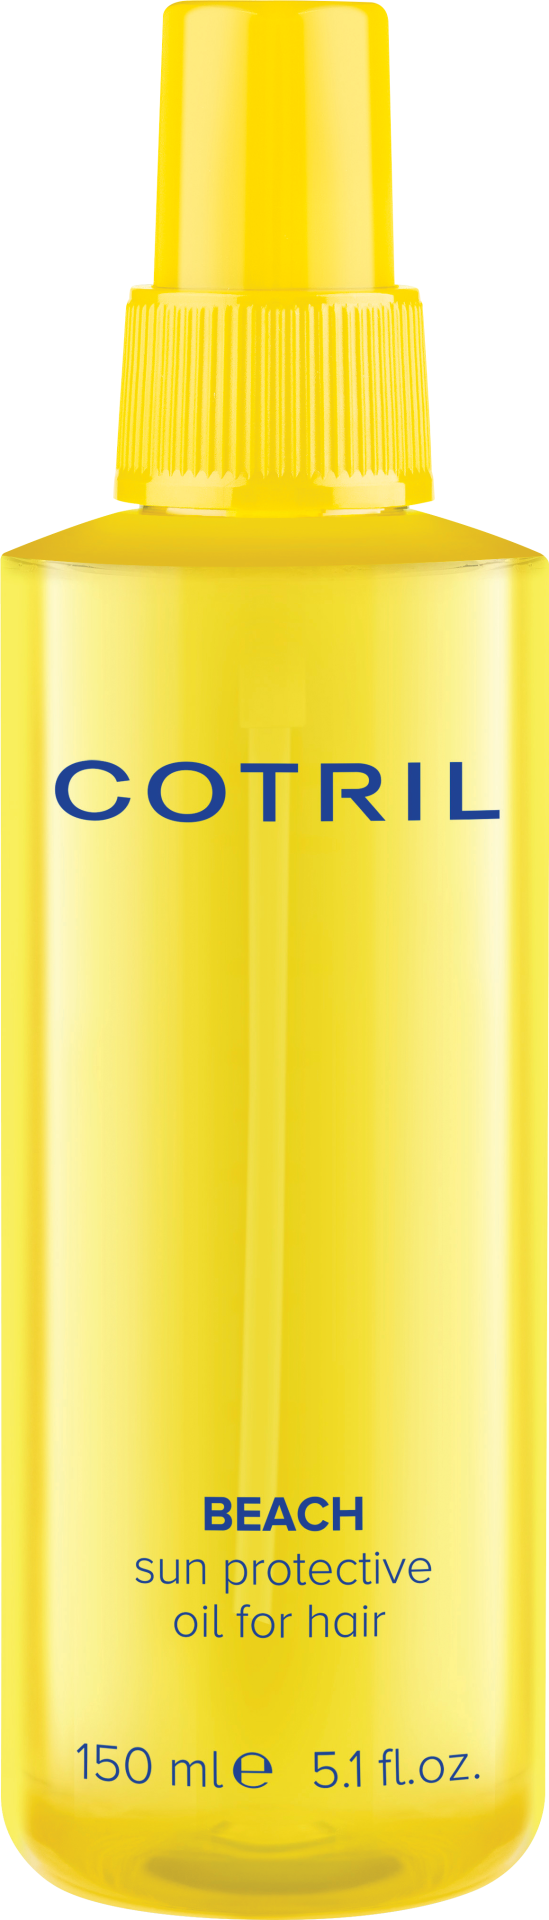 COTRIL BEACH OIL 150 ml 19eur Special winactie: win een Cotril beach set